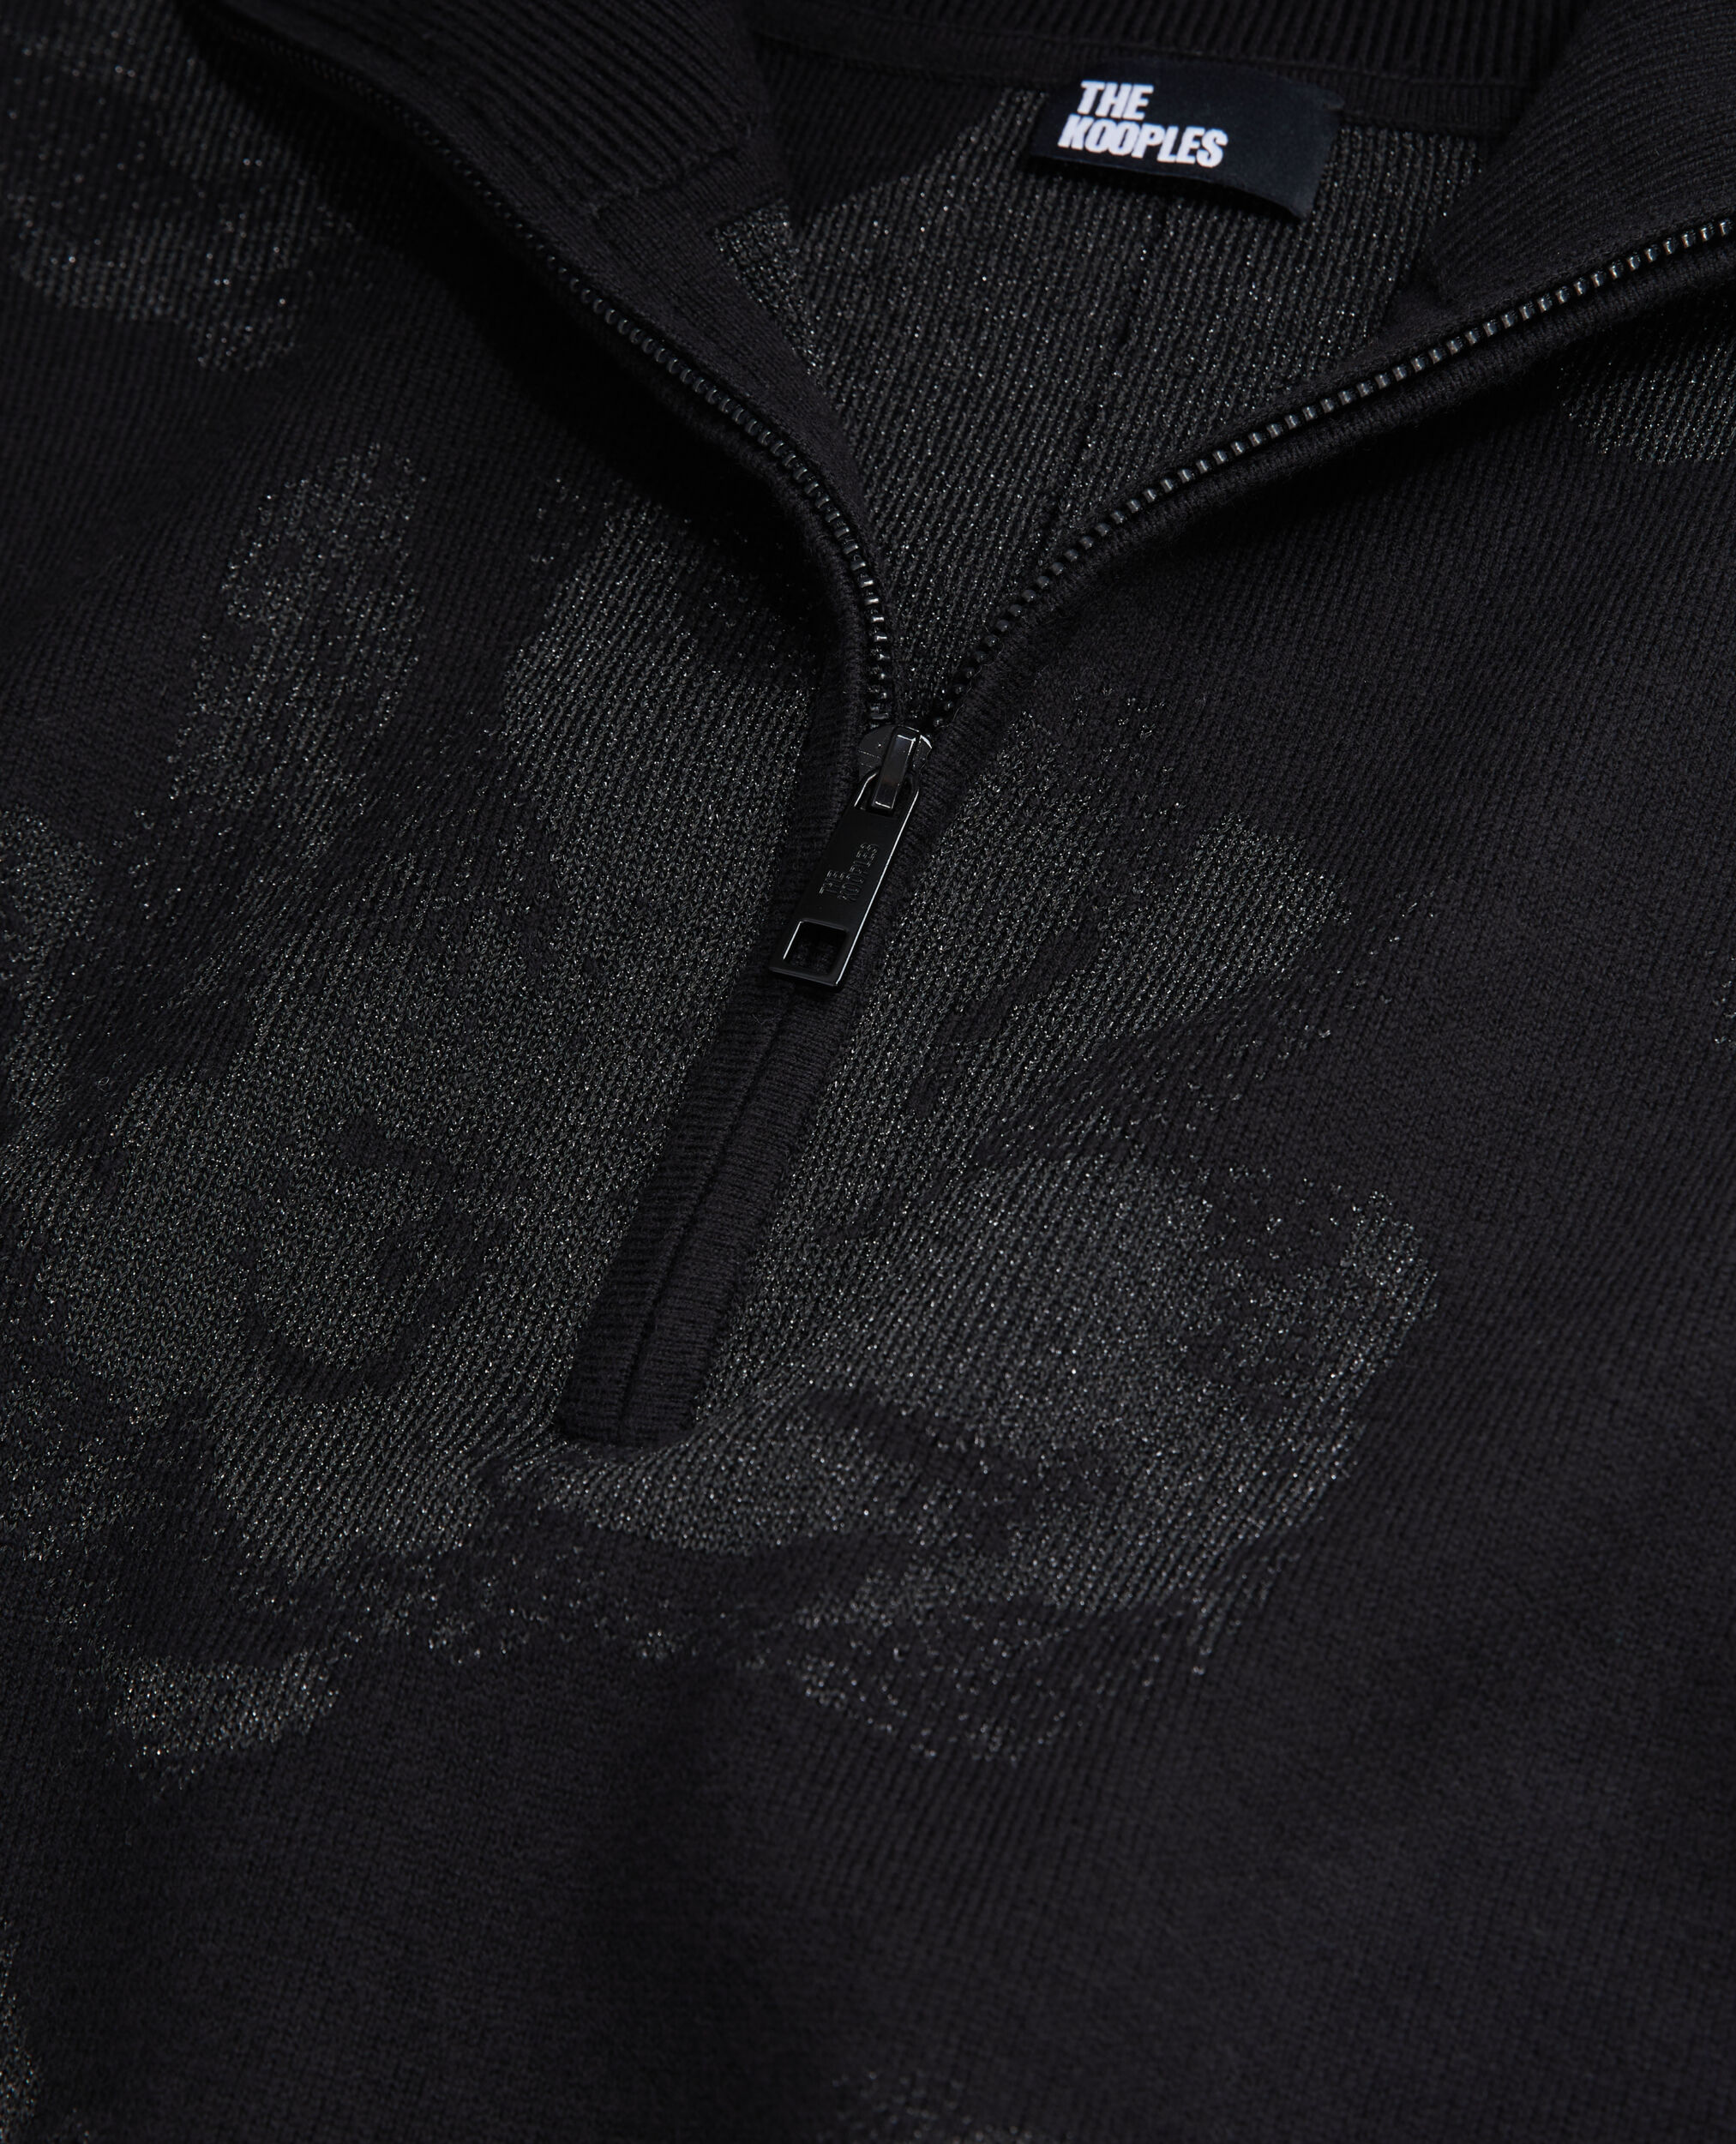 Jersey negro mezcla lana motivos con alambre de plata, BLACK/BLACK, hi-res image number null